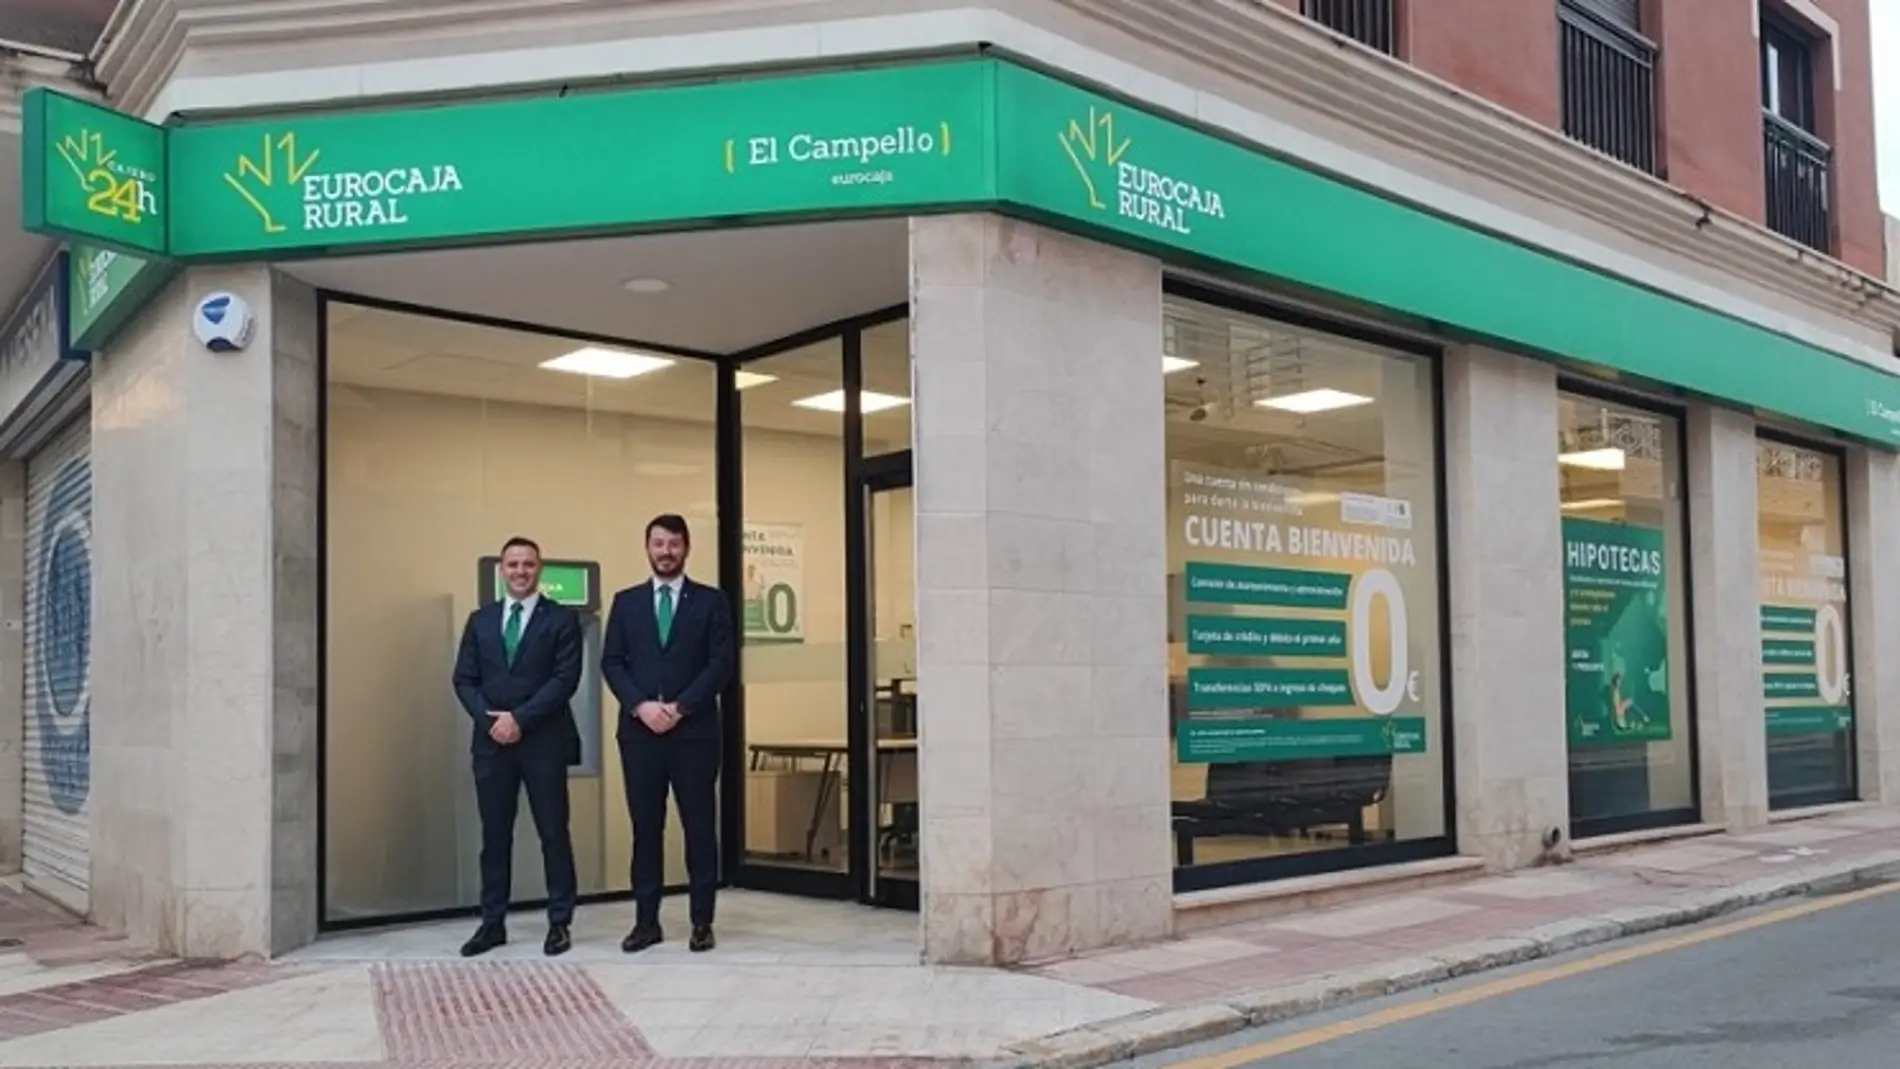 Eurocaja Rural inaugura una oficina en El Campello